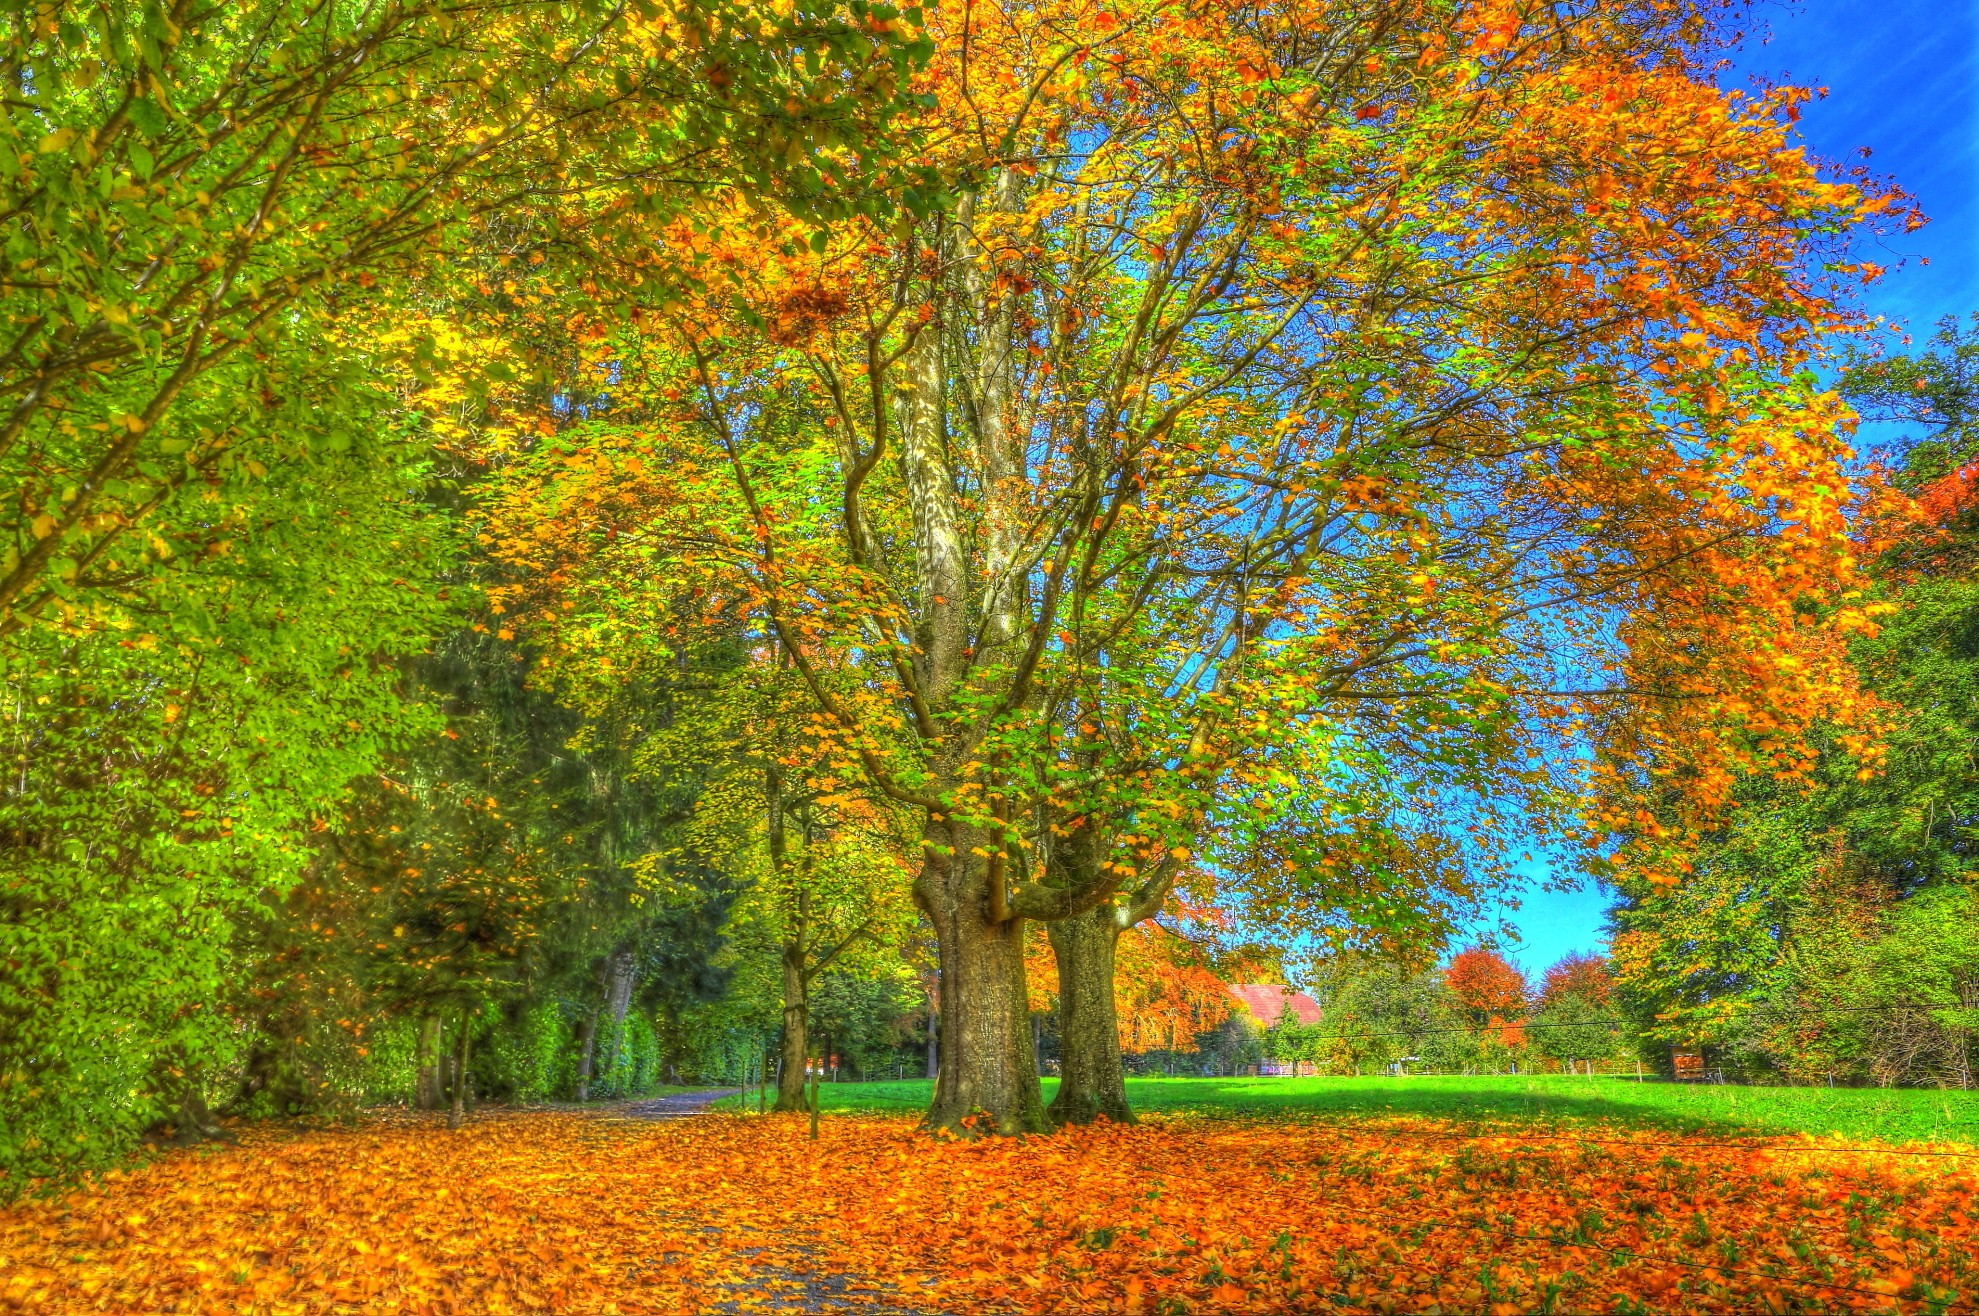 Скачать обои бесплатно Осень, Парк, Дерево, Фотографии картинка на рабочий стол ПК